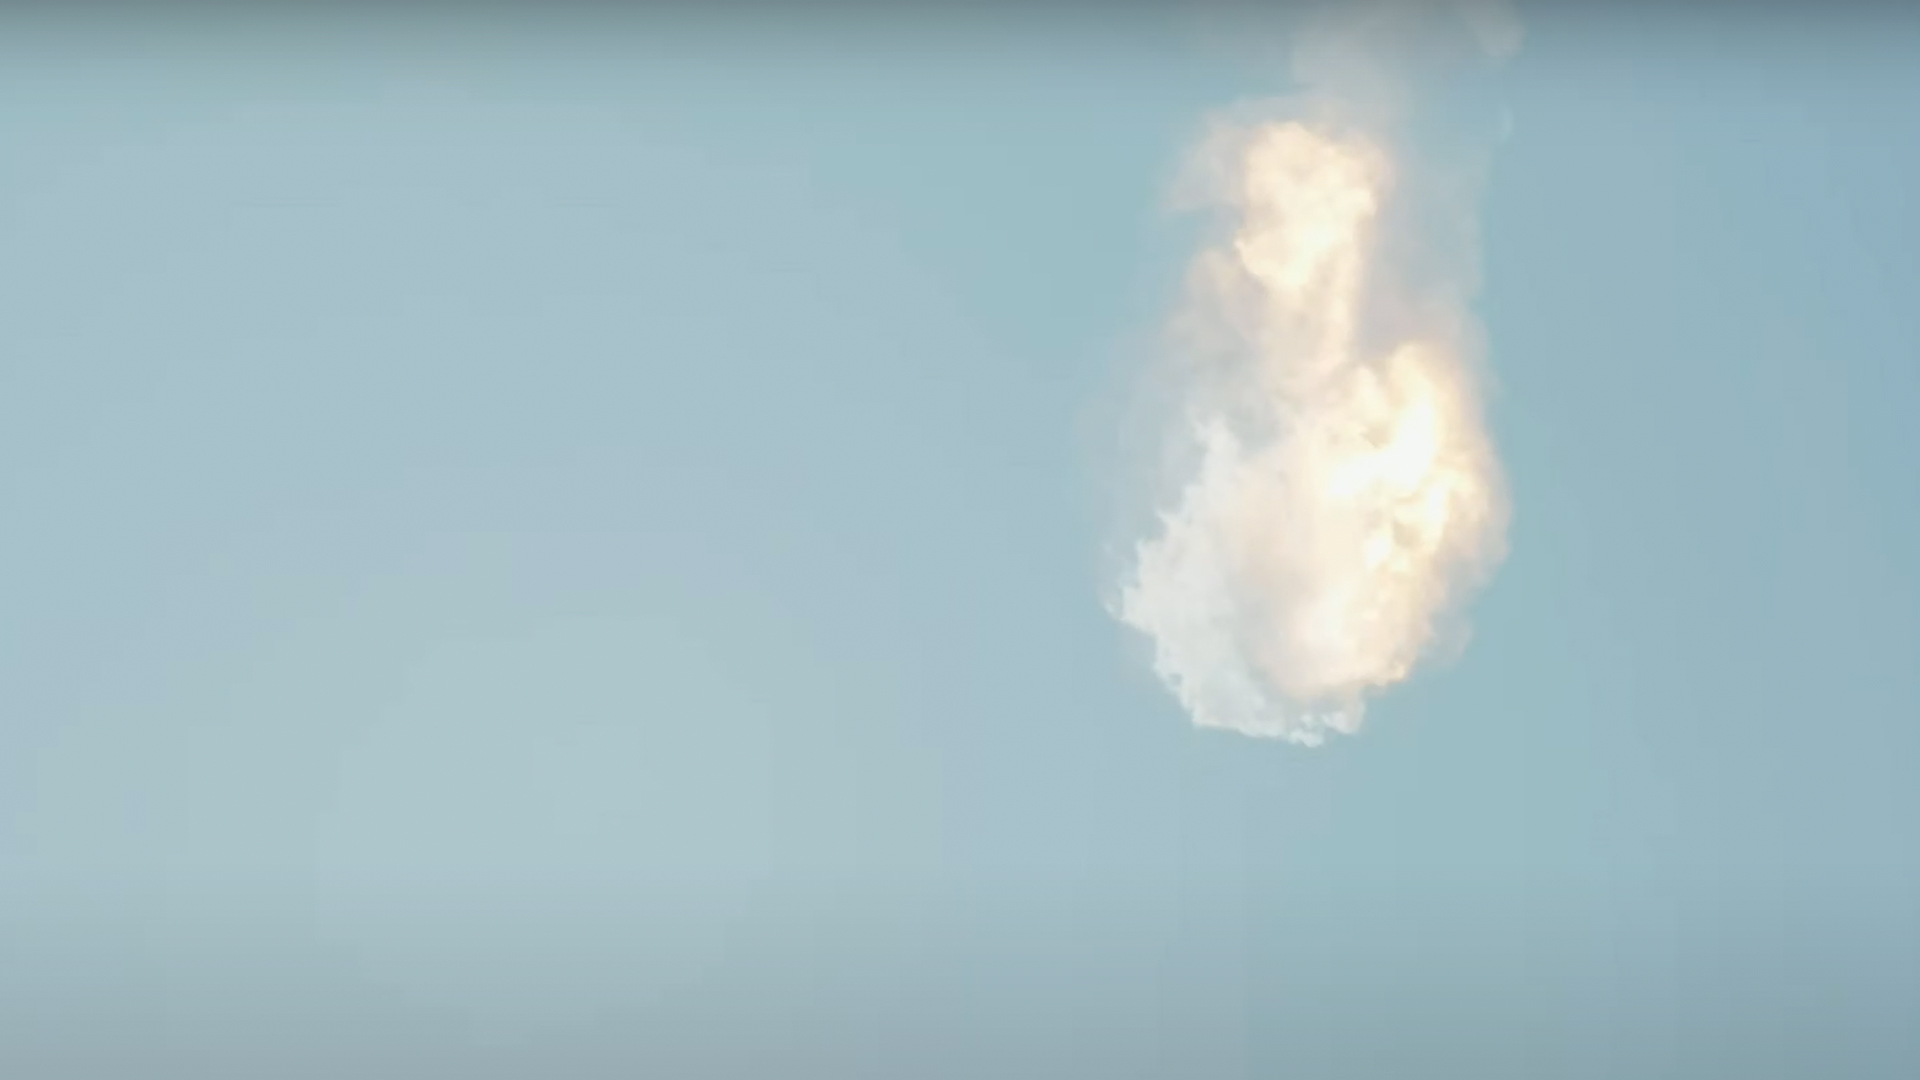 Flight Termination System des Starship von SpaceX ausgelöst beim Orbital Test Flight, Screenshot;
© SpaceX